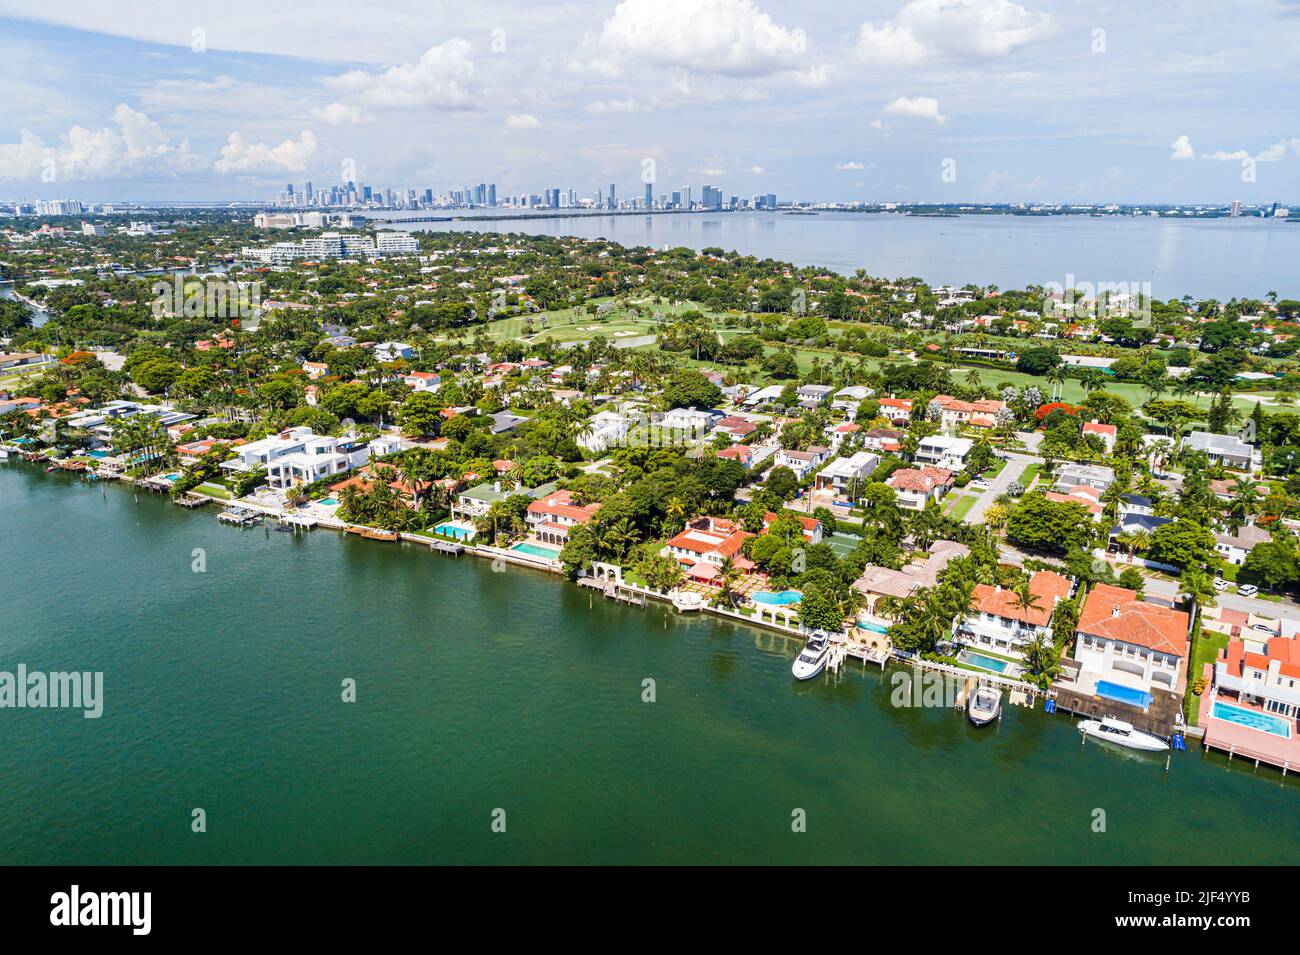 Miami Beach Florida, Luftaufnahme von oben, Indian Creek La Gorce Island Country Club, Villen am Wasser Anwesen Häuser Häuser Residenzen, Stadt Stockfoto